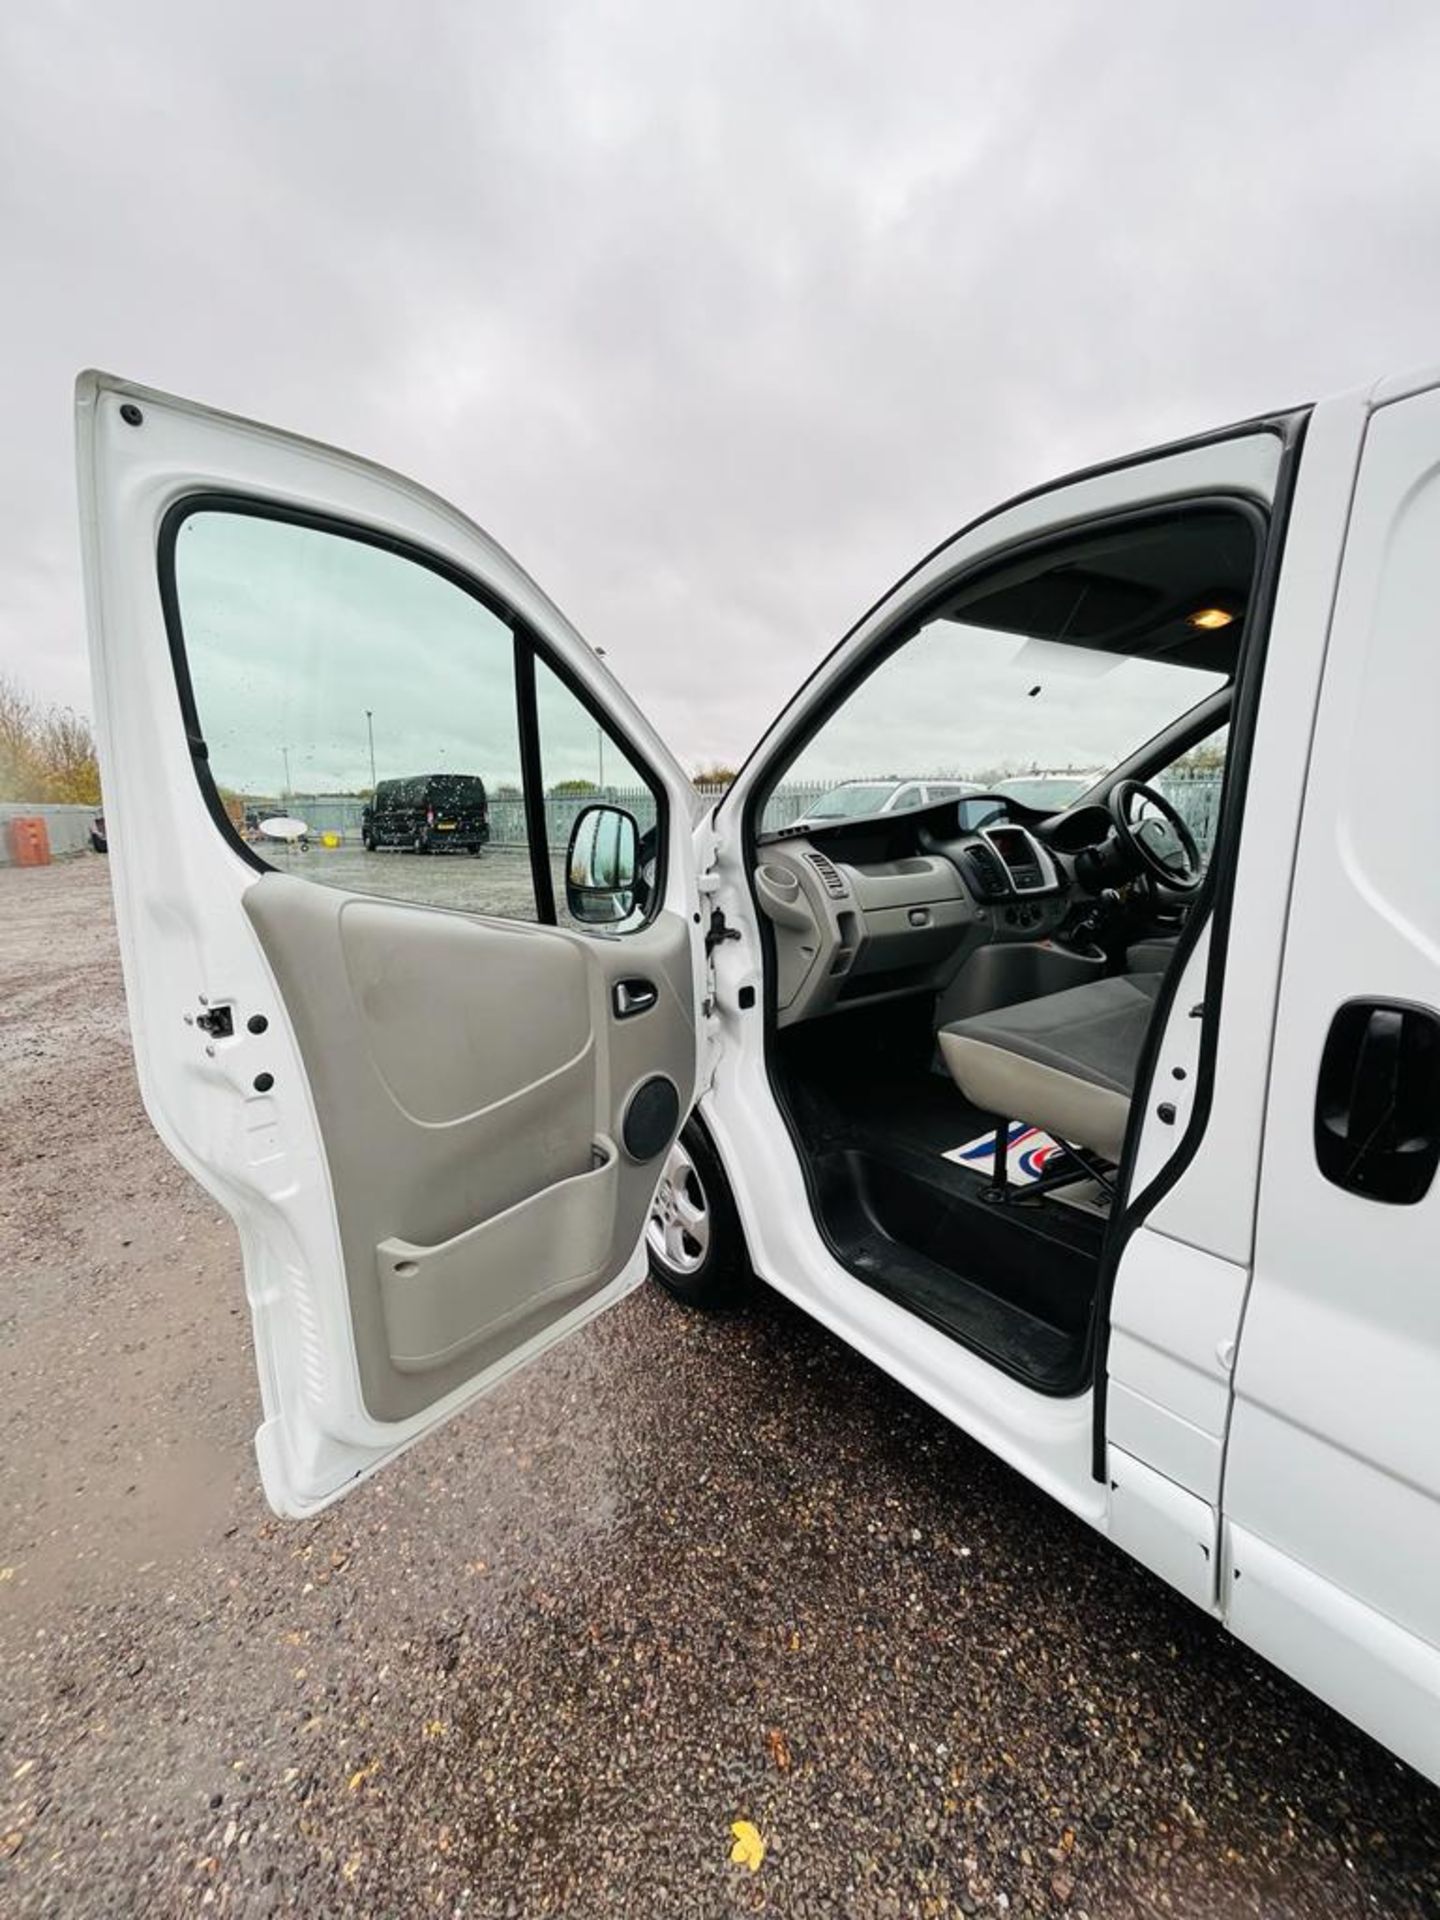 ** ON SALE ** Vauxhall Vivaro 2.0 CDTI 115 Sportive LWB 2012 '12 Reg' Sat Nav - A/C - Panel Van - Image 19 of 25